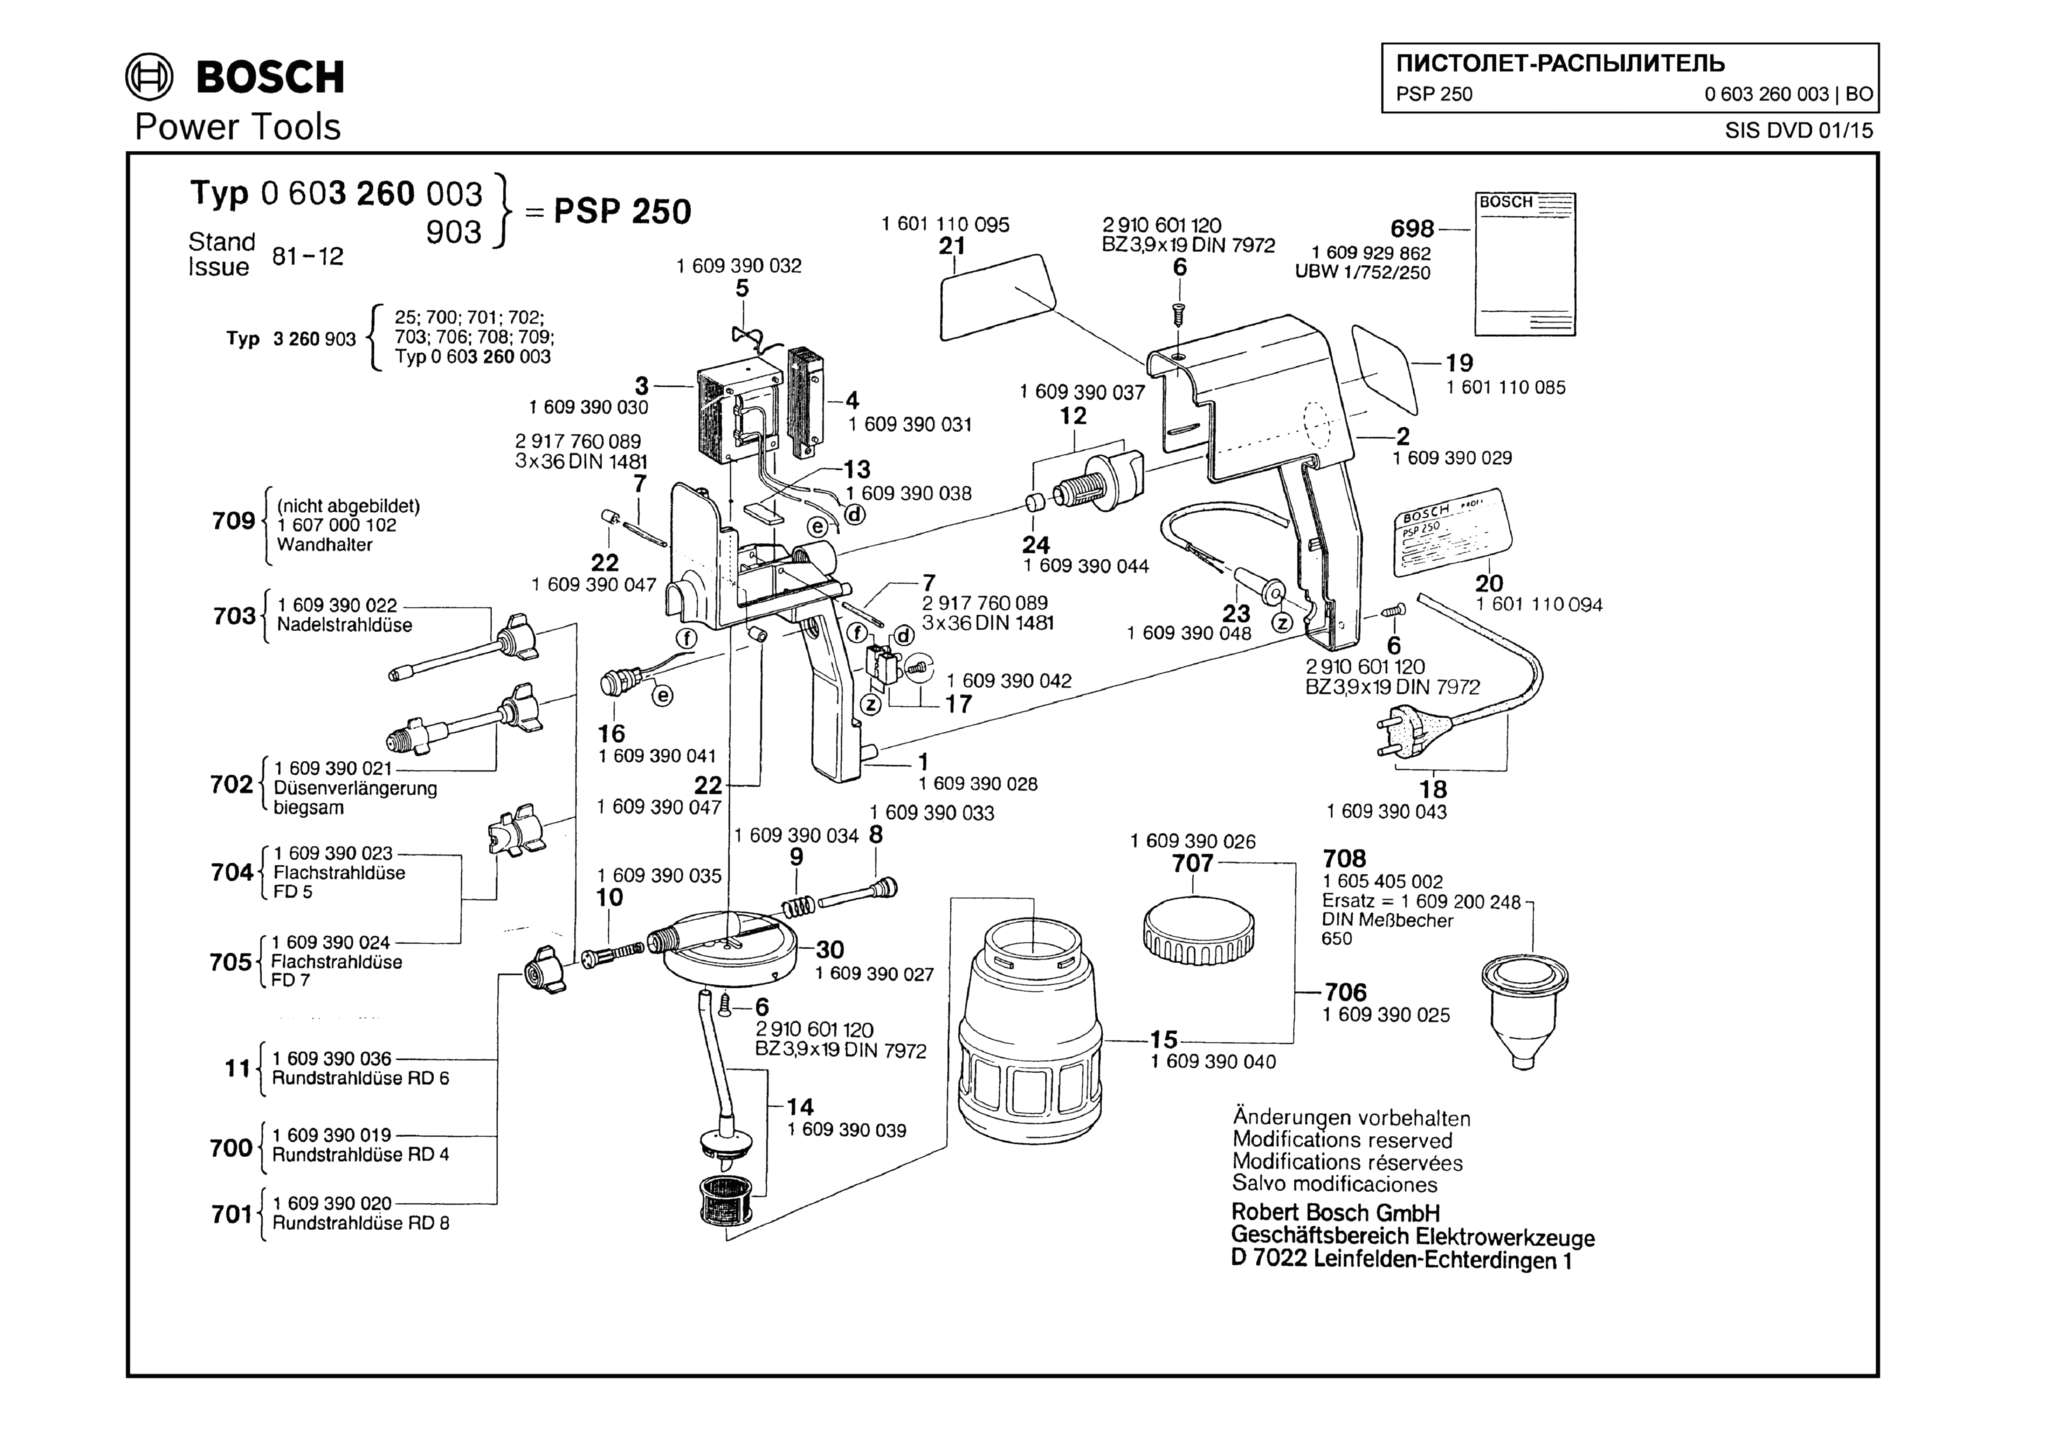 Запчасти, схема и деталировка Bosch PSP 250 (ТИП 0603260003)